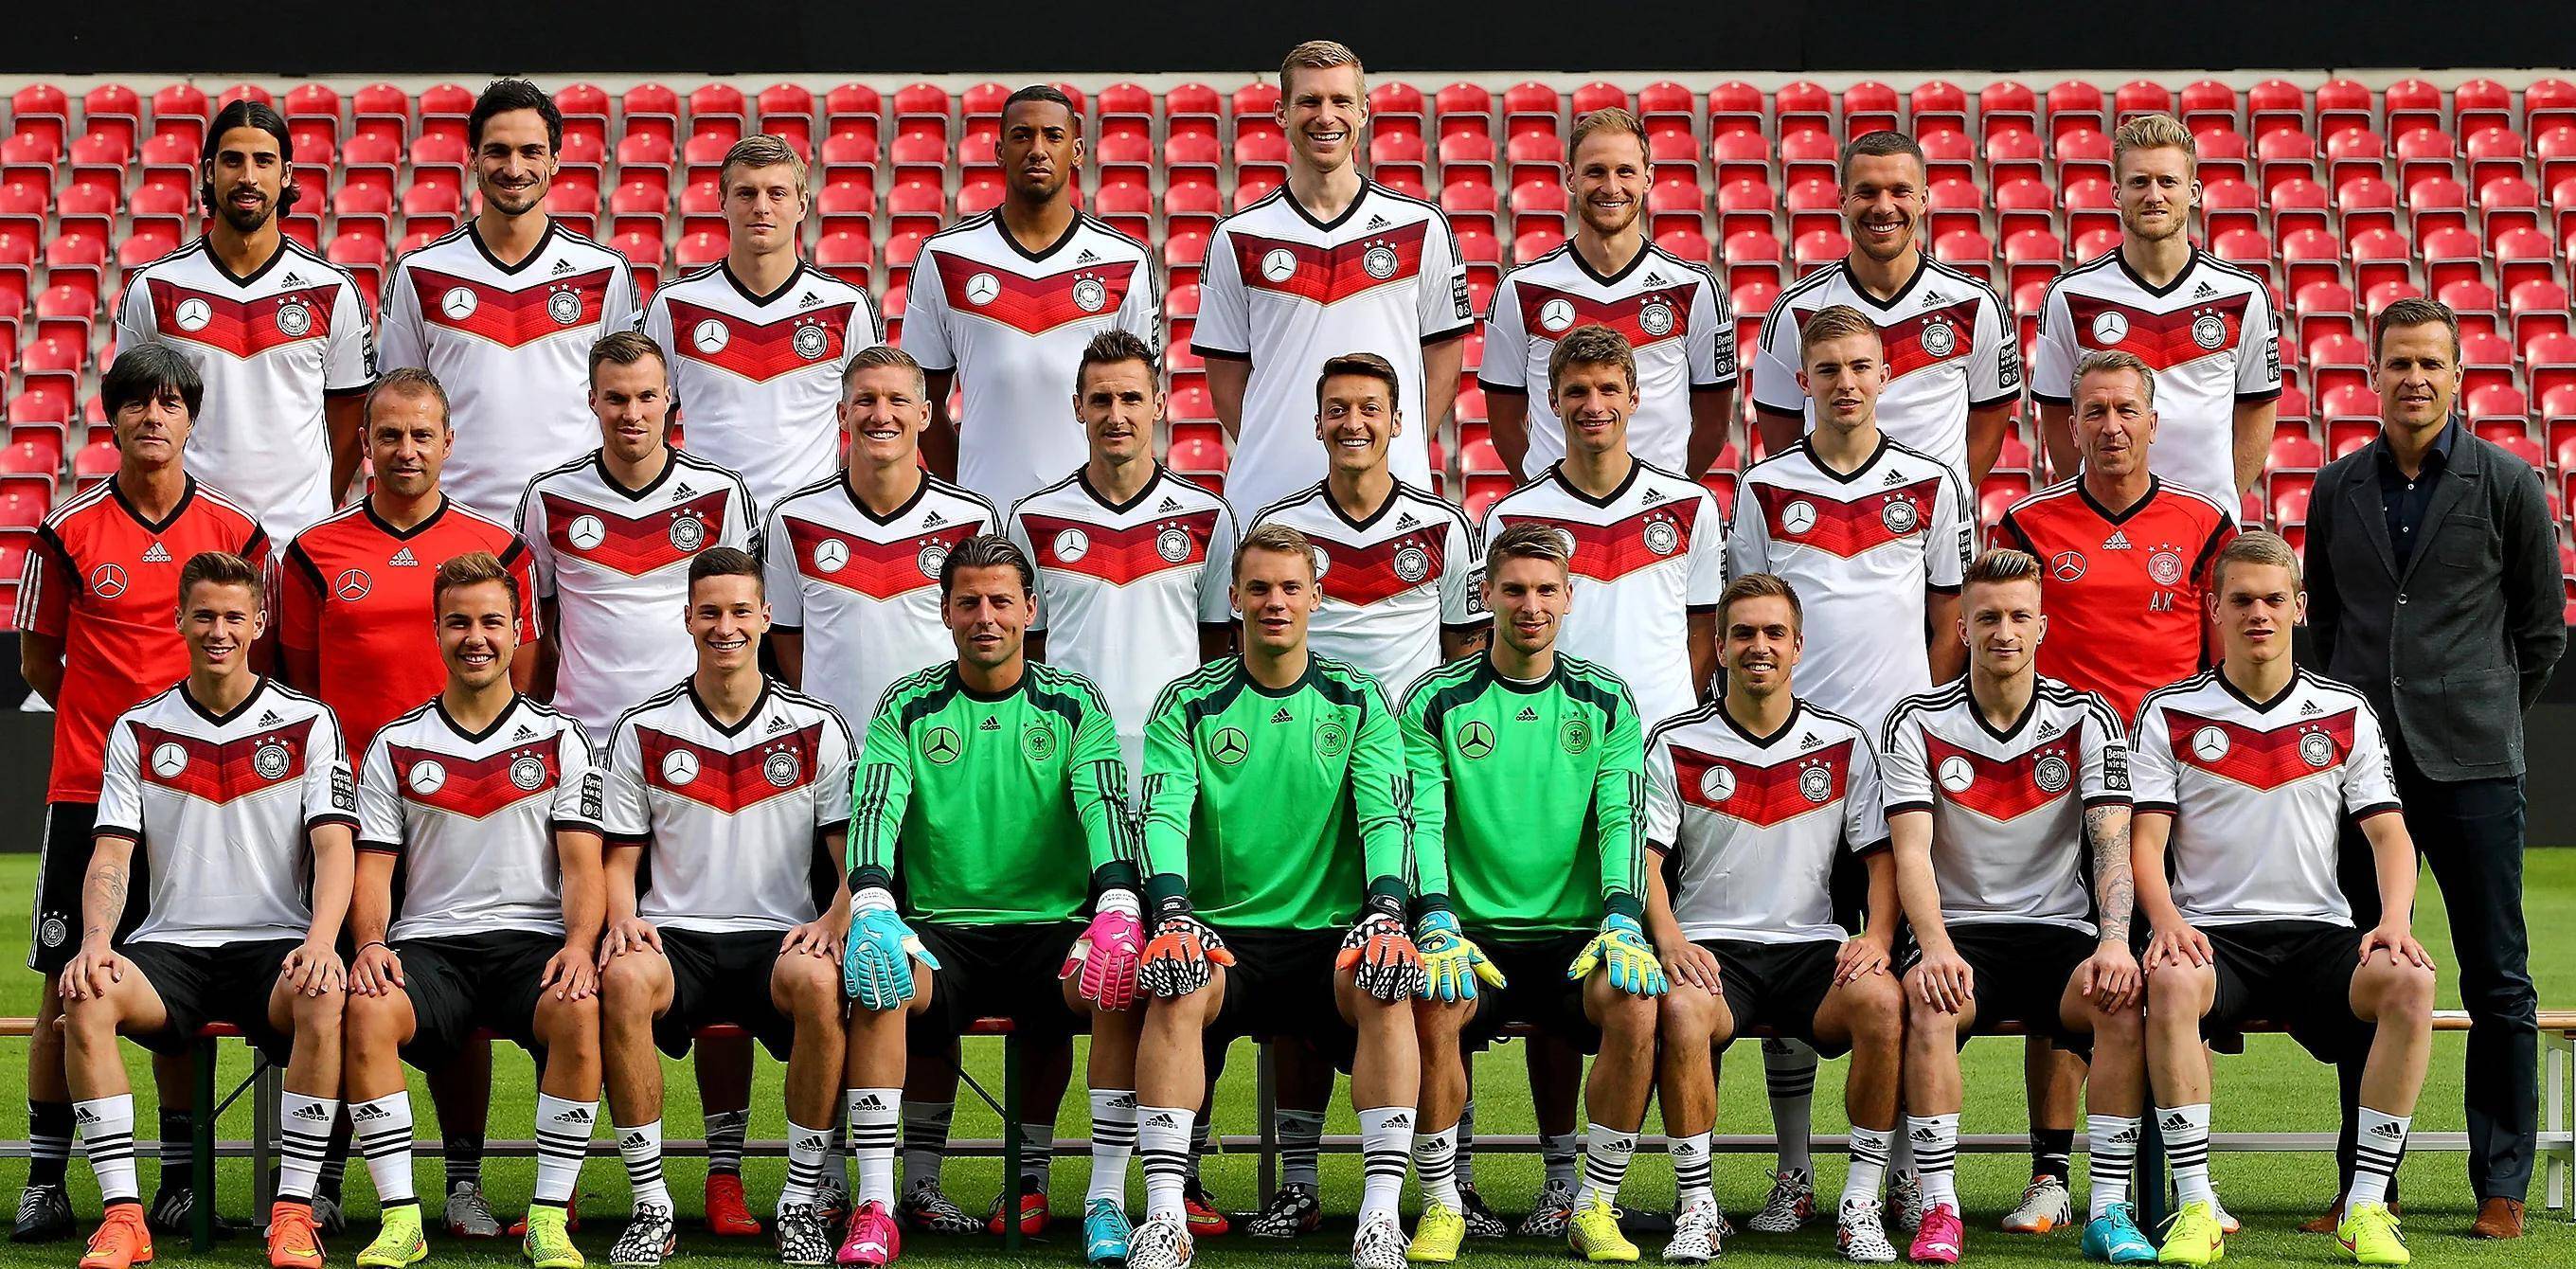 克罗斯19格策20博阿滕2戈茨22教练:狮子座2014世界杯德国队1诺伊尔2